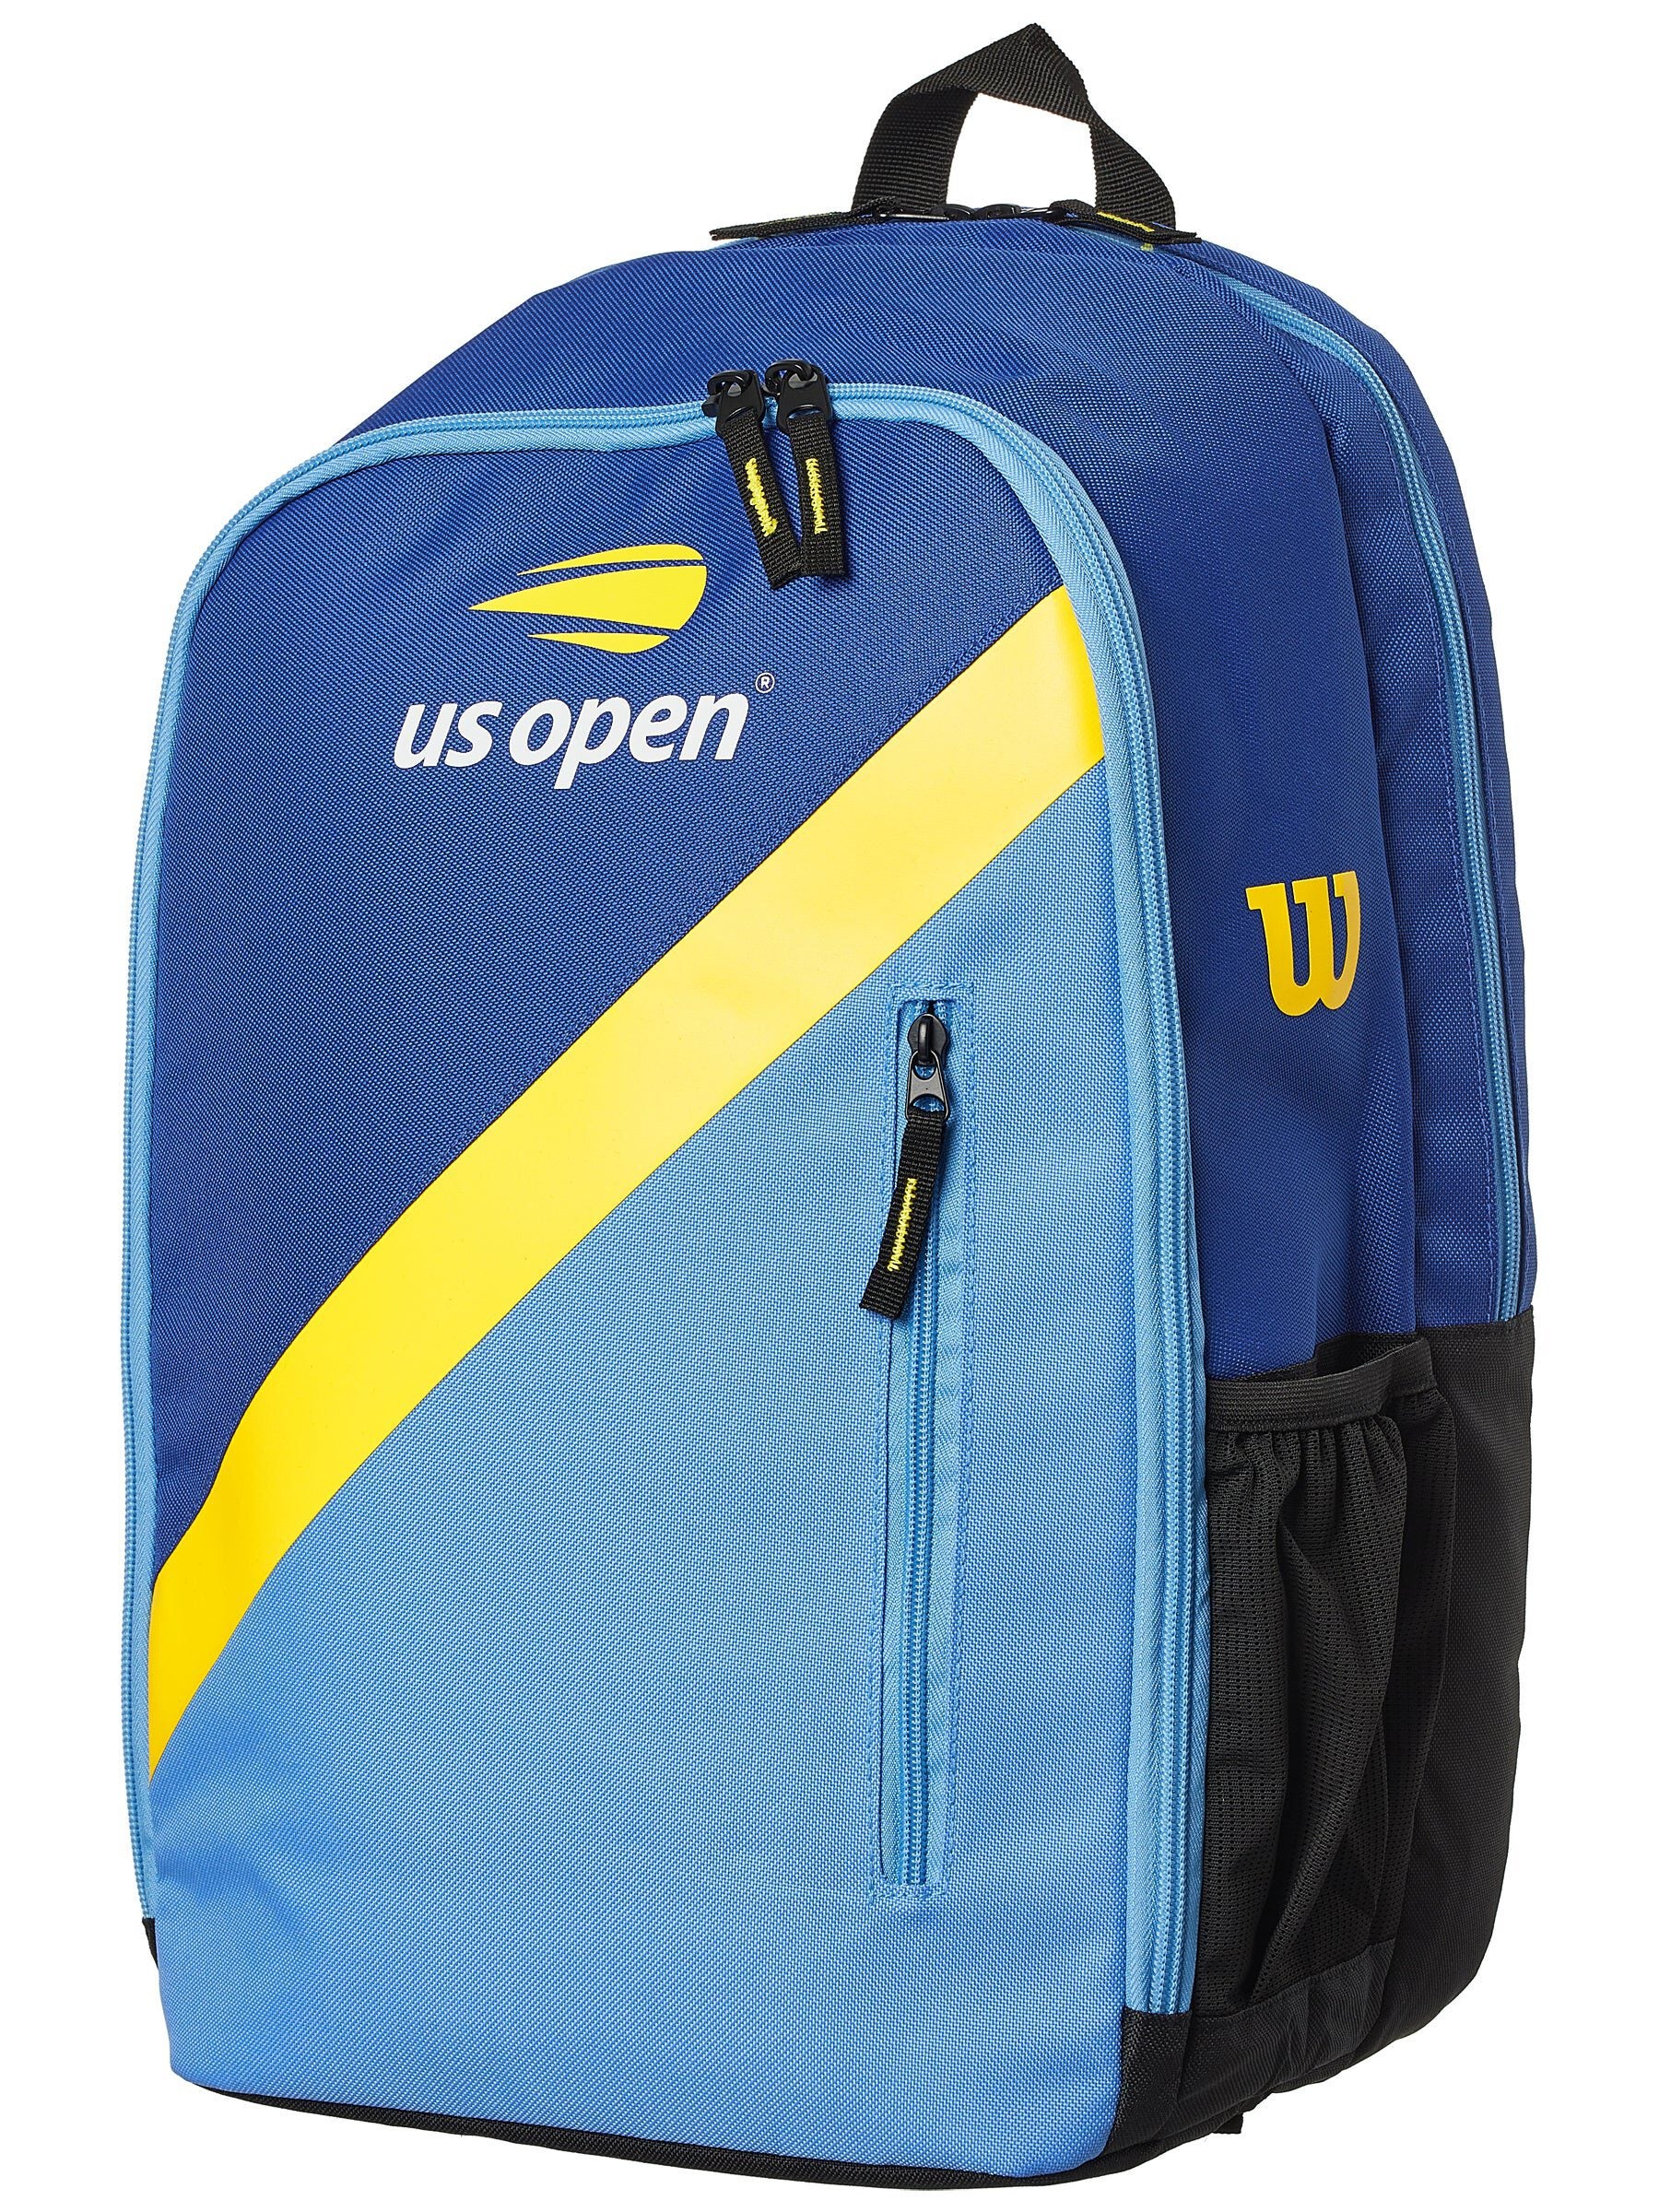 NEW Wilson Evian US Open Tennis Backpack 